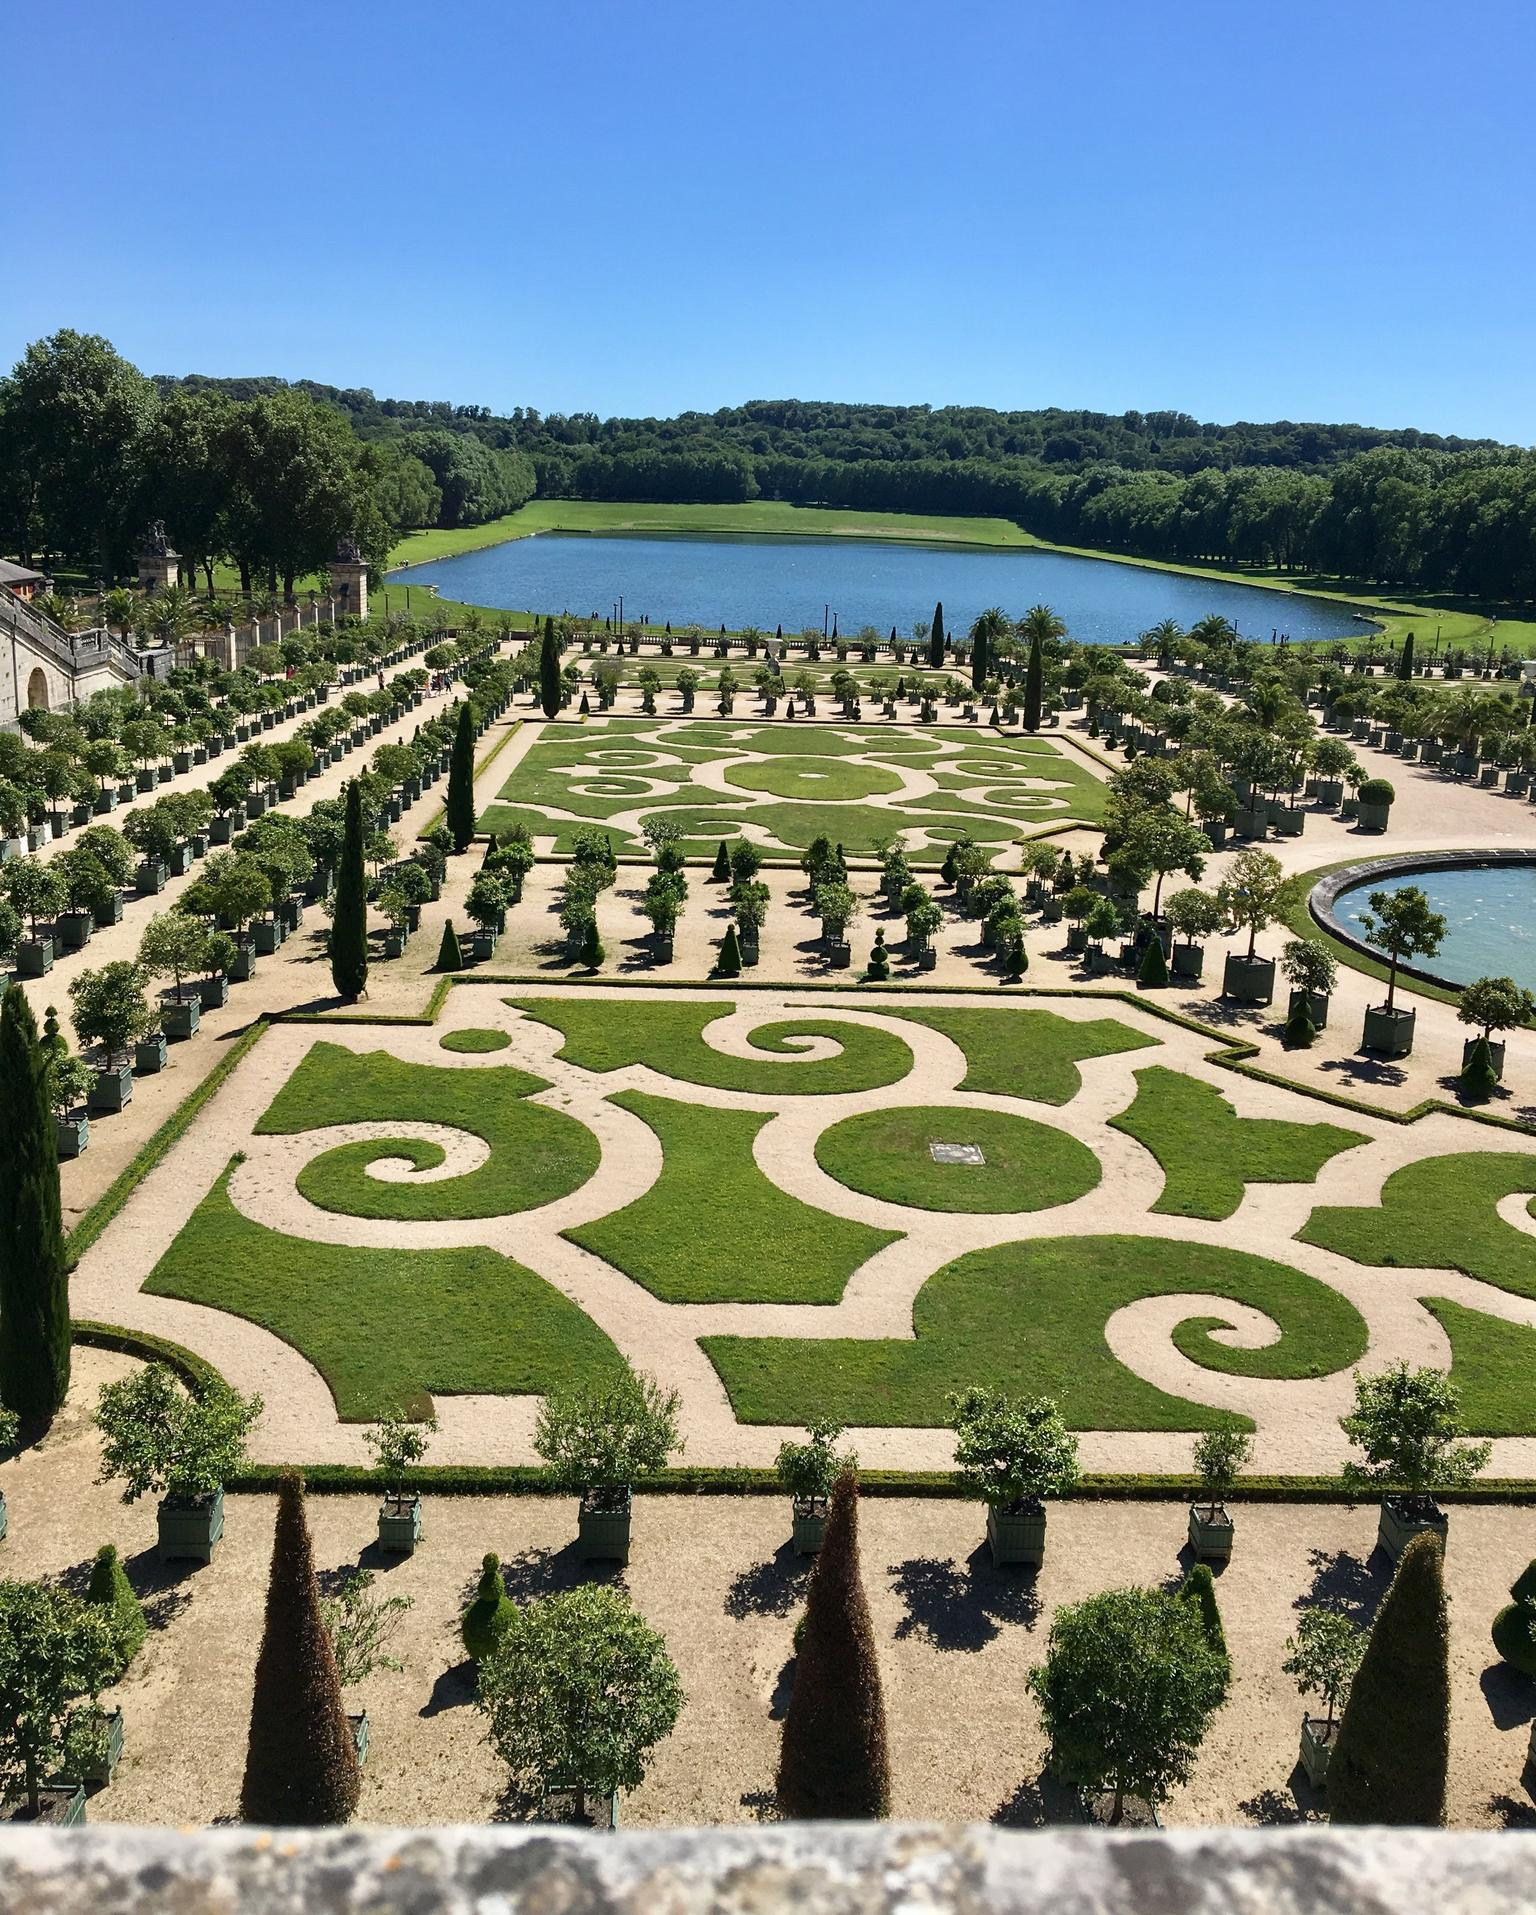 Visita Evite Las Colas Al Palacio De Versalles Y A Los ... avec Jardines De Versalles Paris